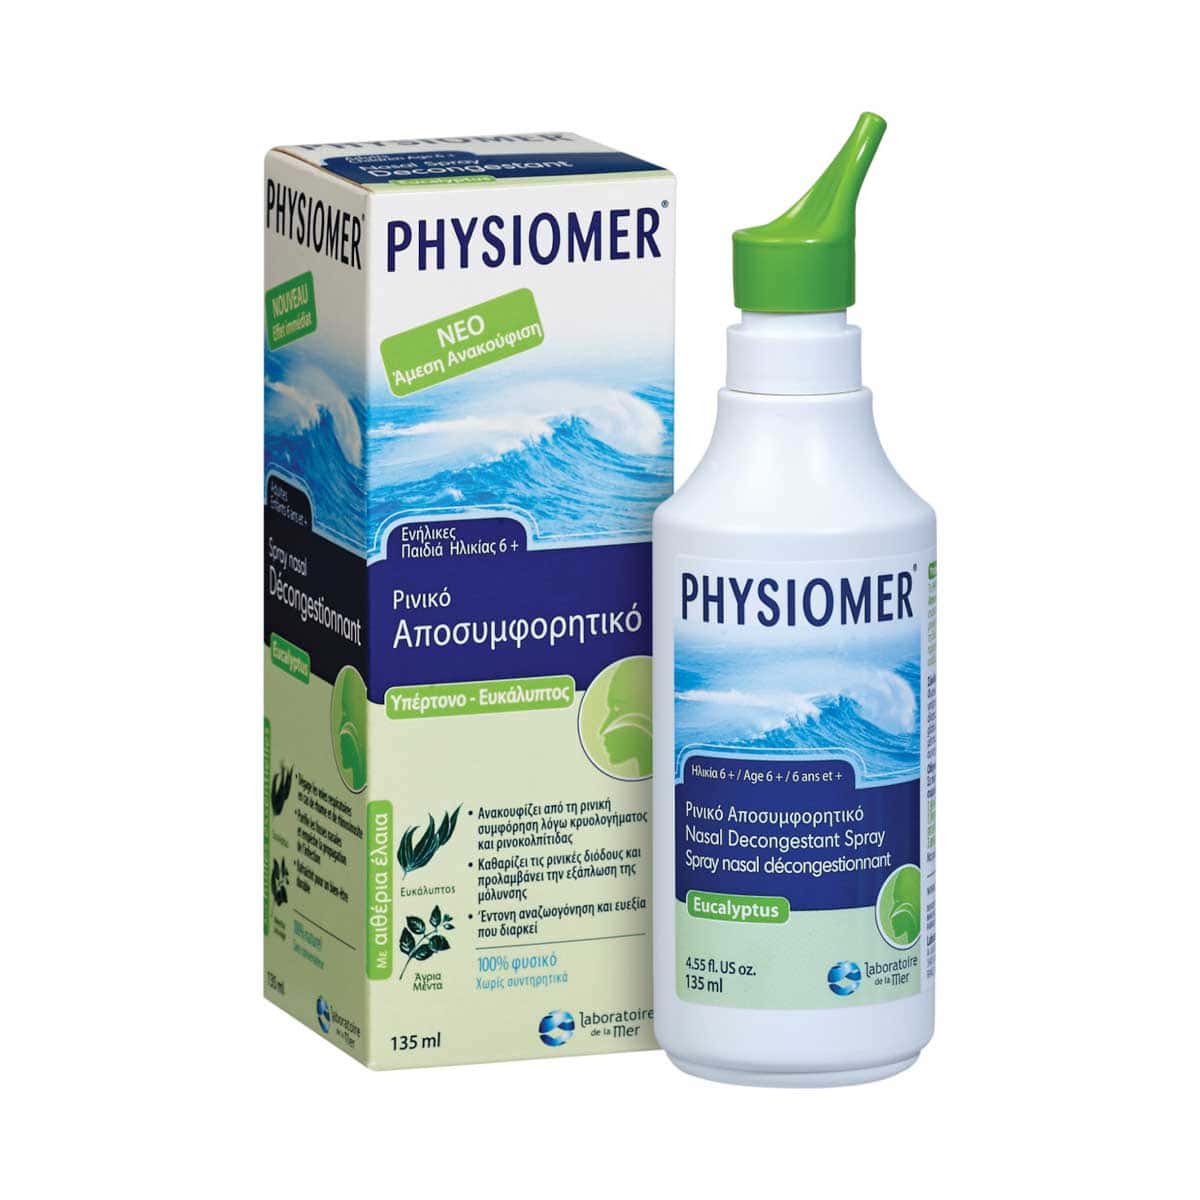 Physiomer-Hypertonic-Eucalyptus-apo-6-Etwn-135-ml-3564300001046